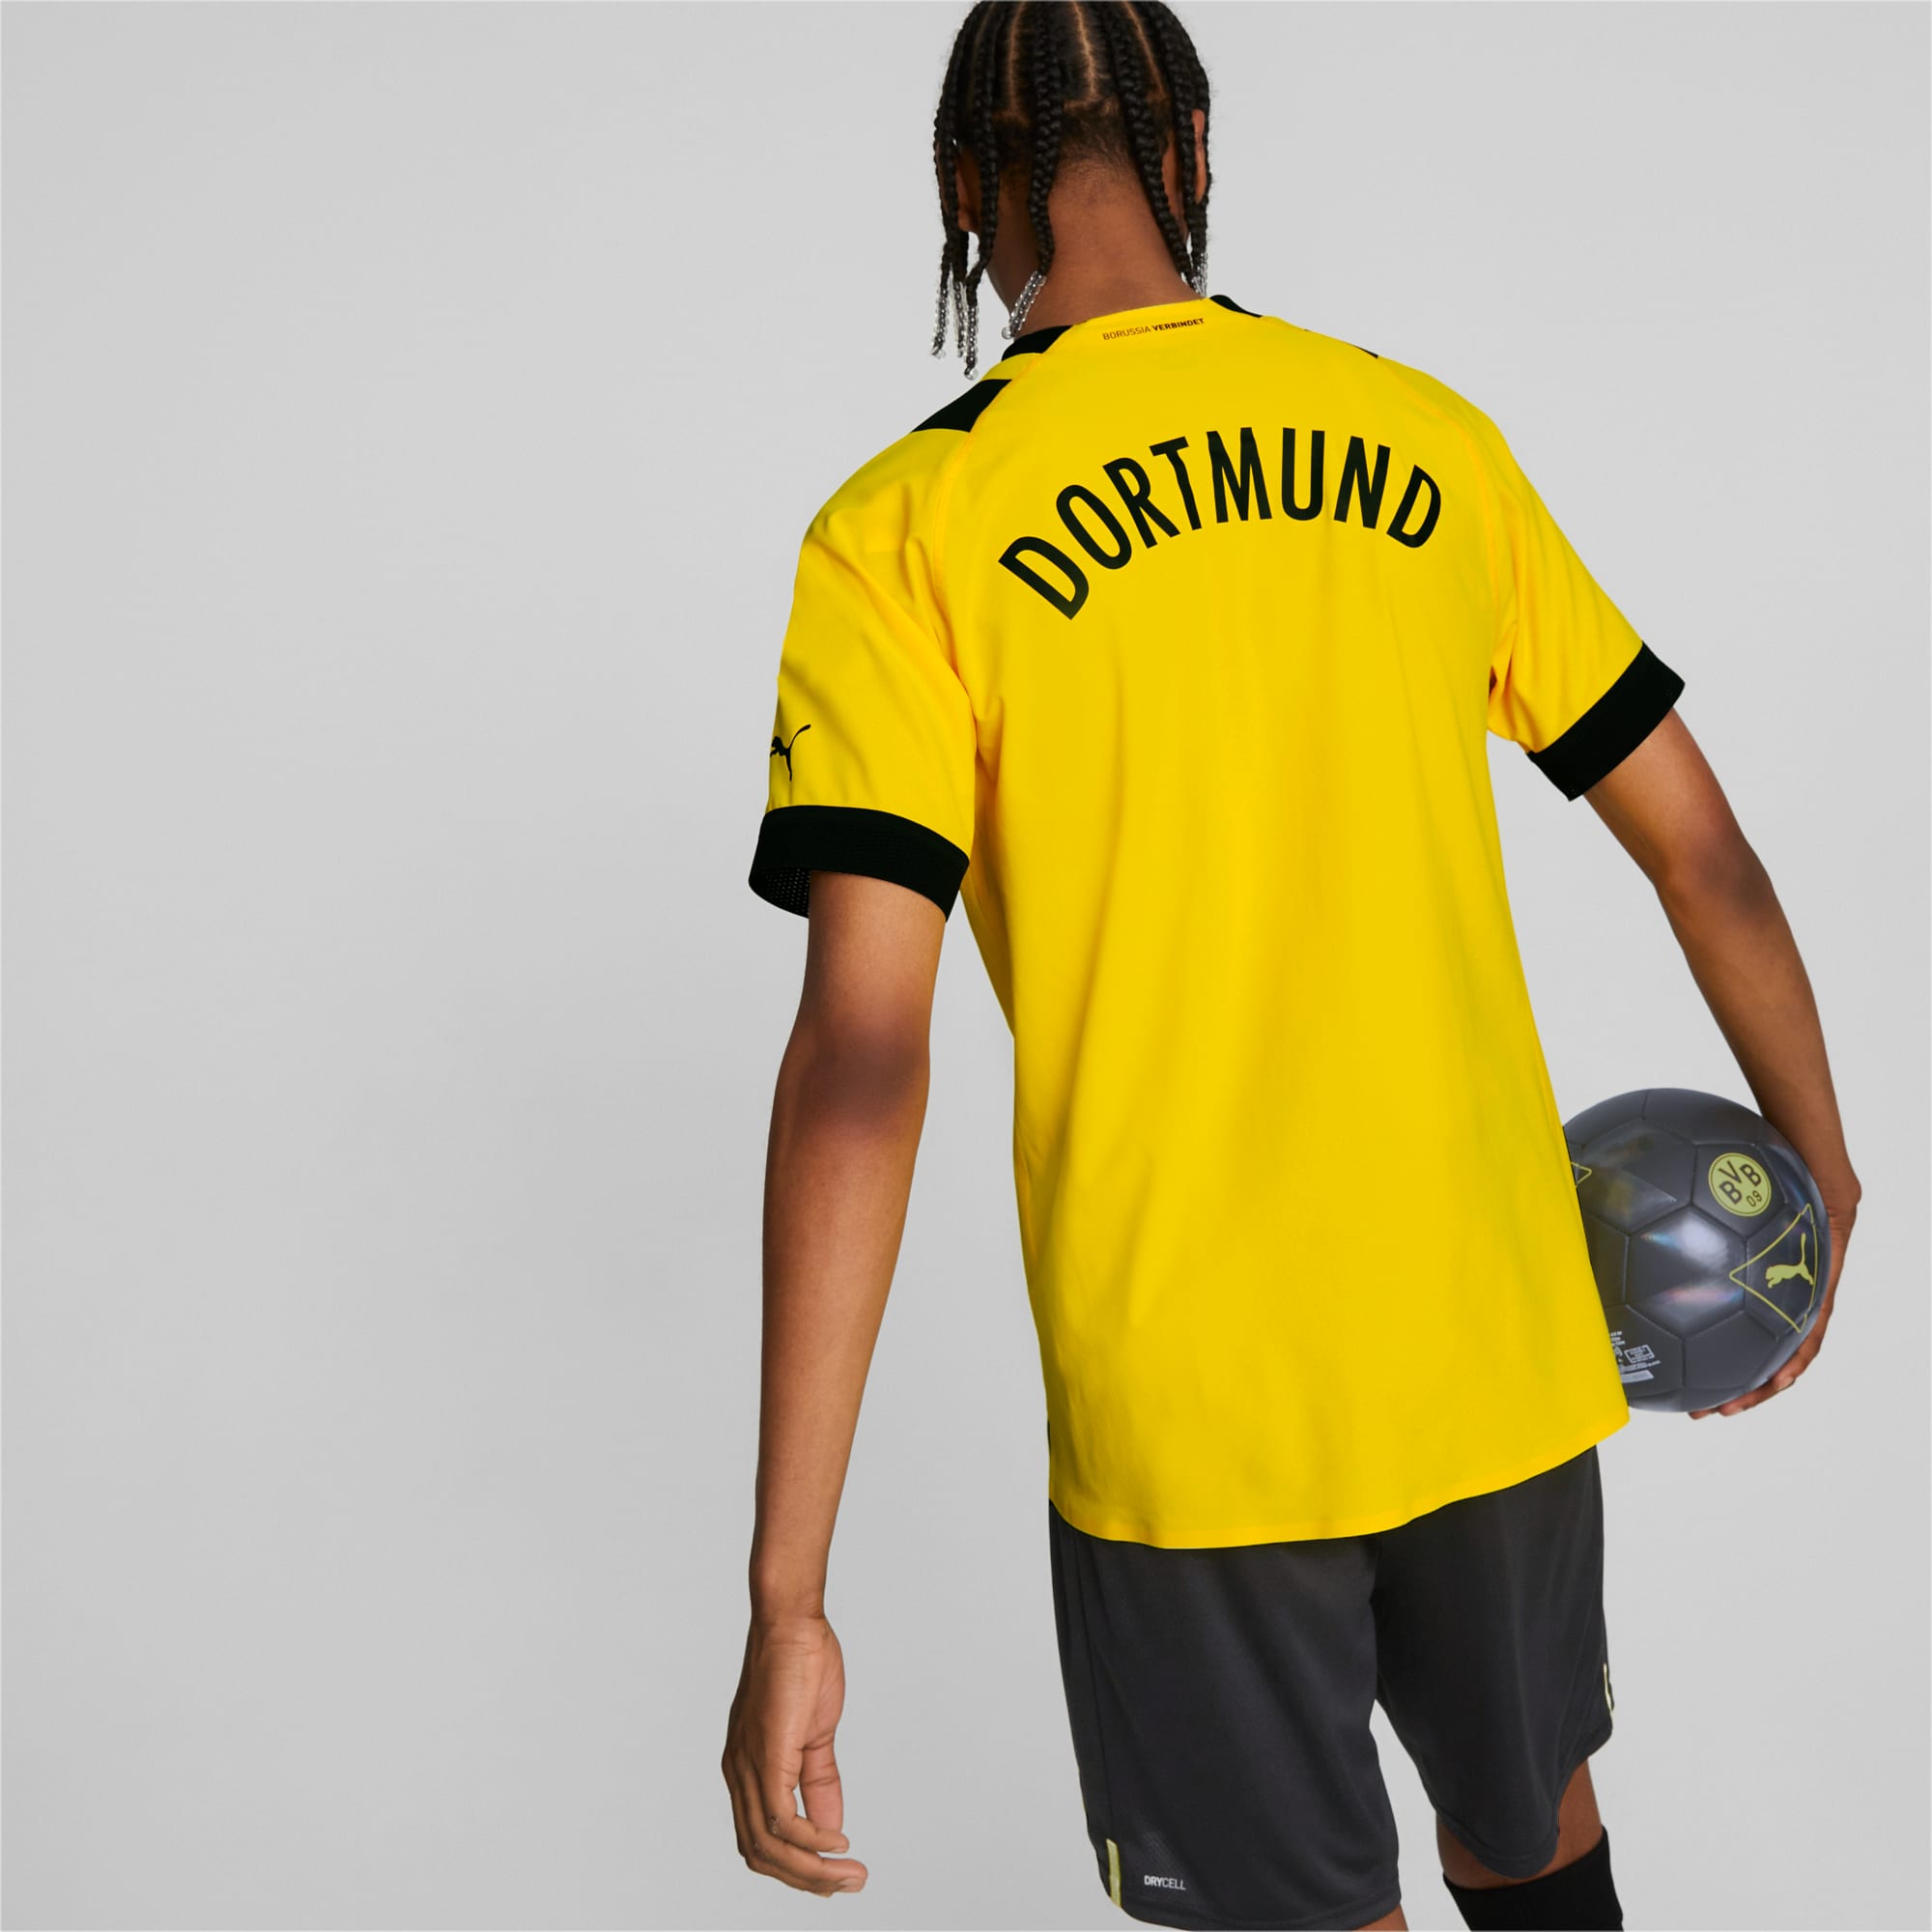 Official Dortmund Jersey & Shirts